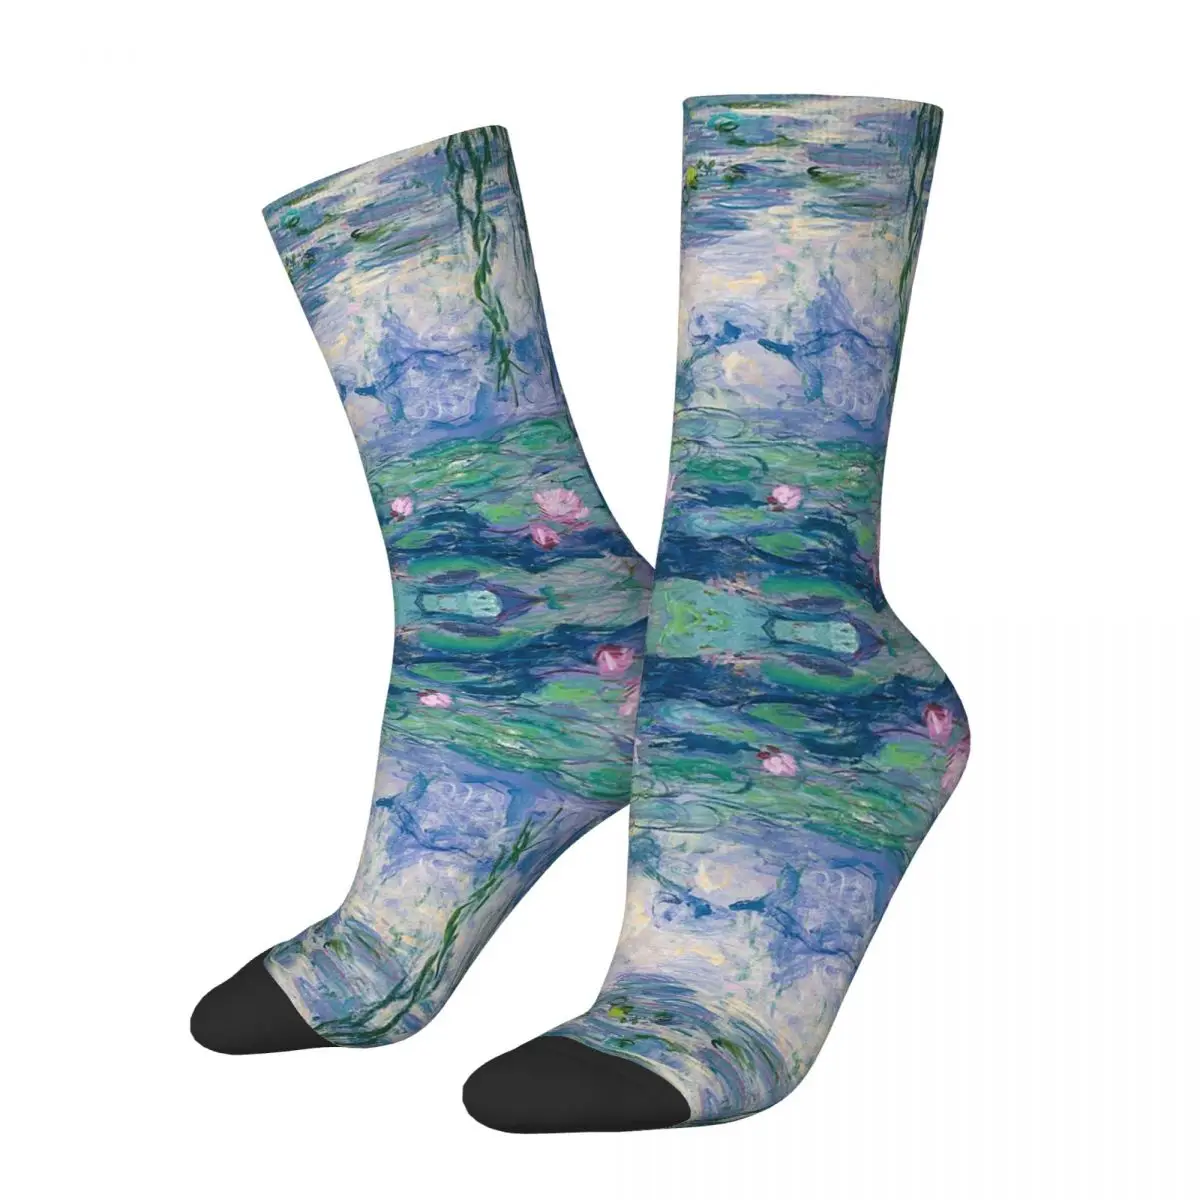 

Носки Водные лилии, Клод Моне, носки для изобразительного искусства, Супермягкие чулки в стиле Харадзюку, всесезонные длинные носки, аксессуары для мужчин и женщин, подарки